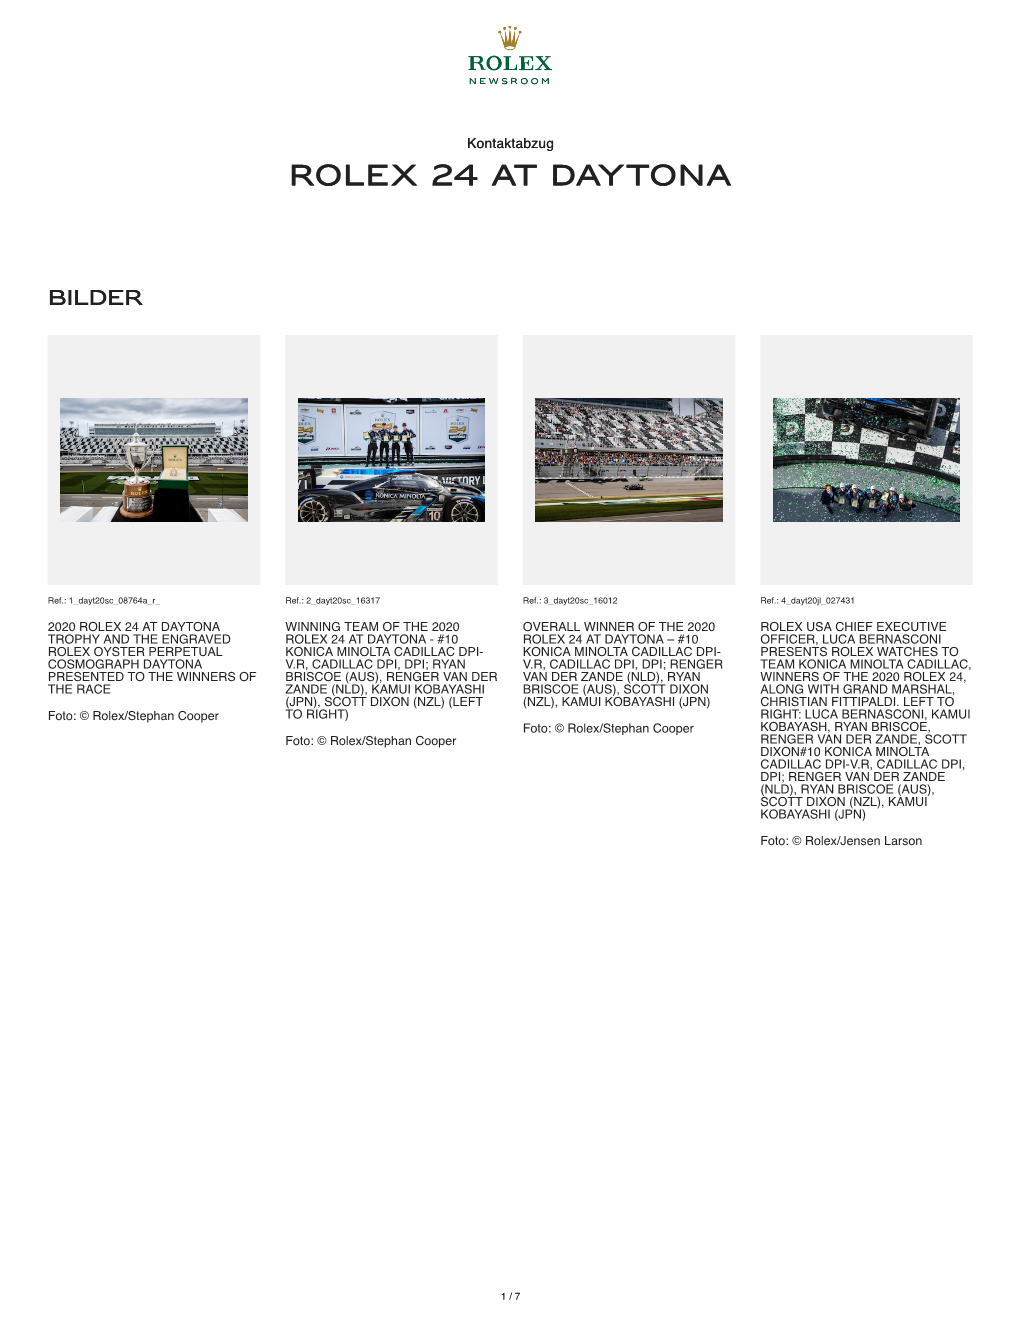 Rolex 24 at Daytona